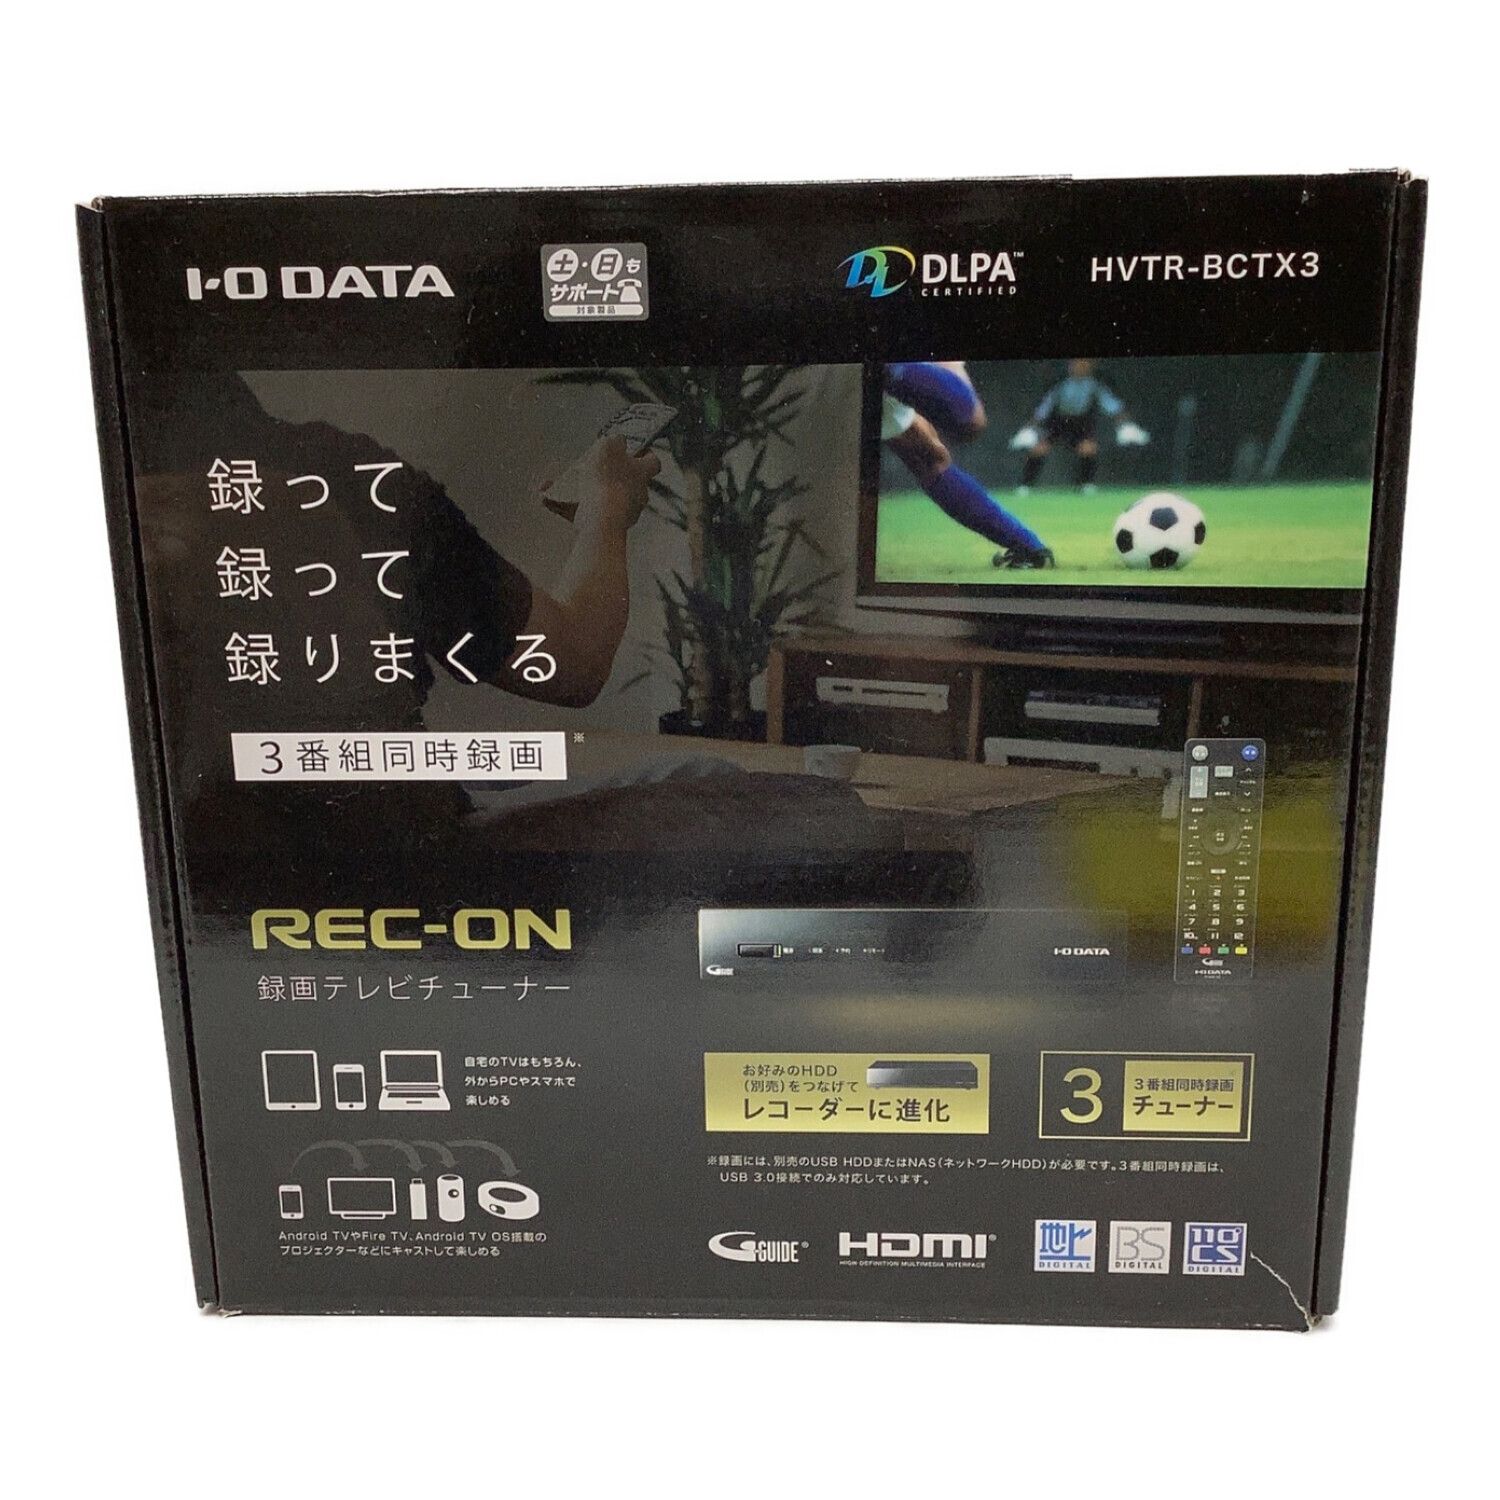 I-O DATA 地上BS110度CSデジタル放送対応ネットワークテレビチューナー